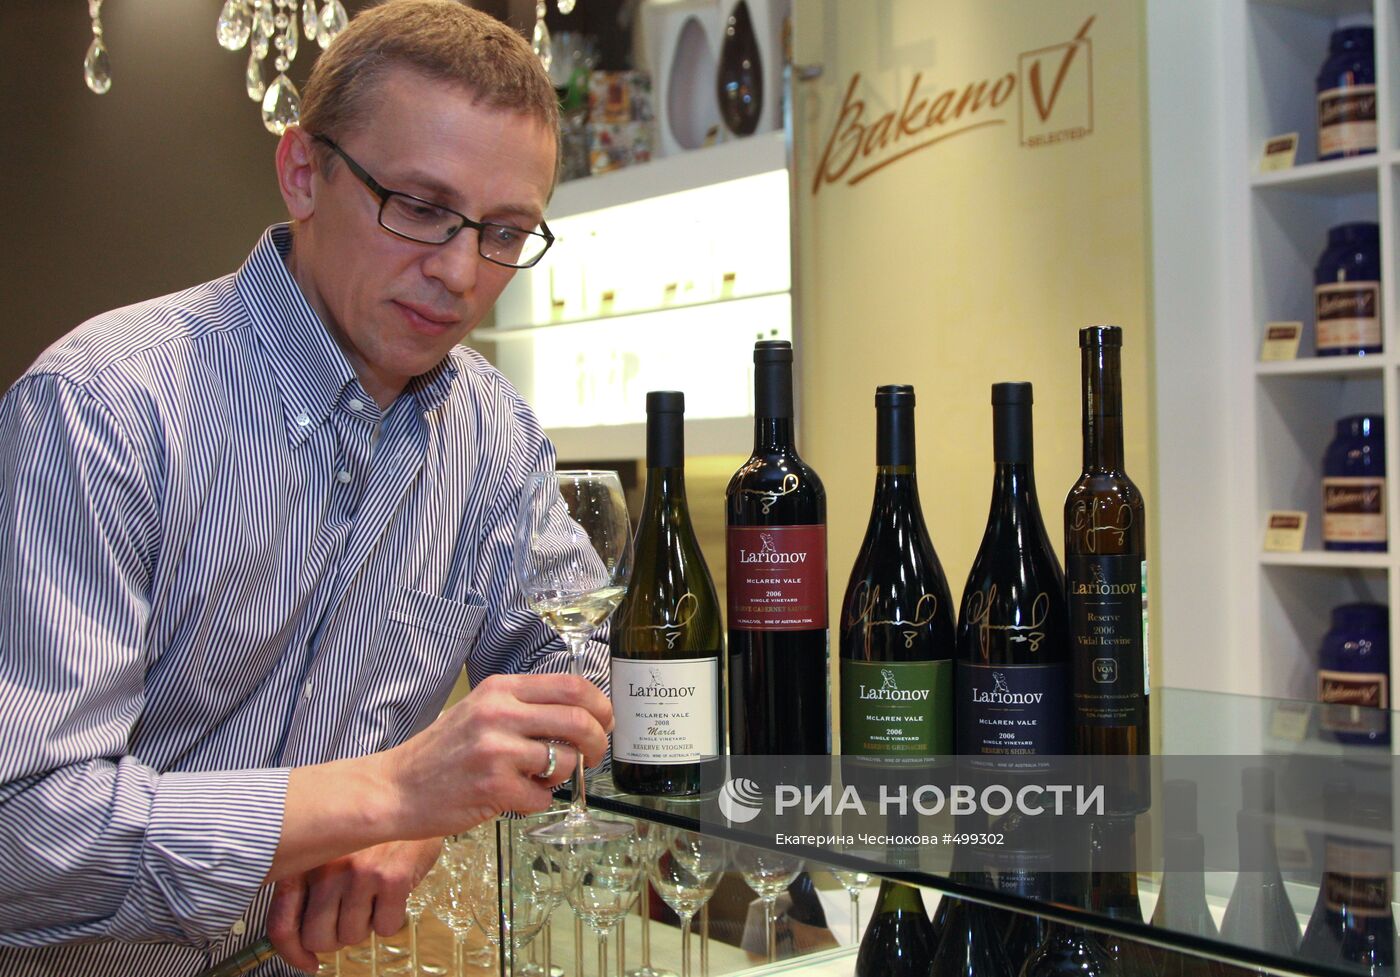 Игорь Ларионов представил коллекцию именных вин